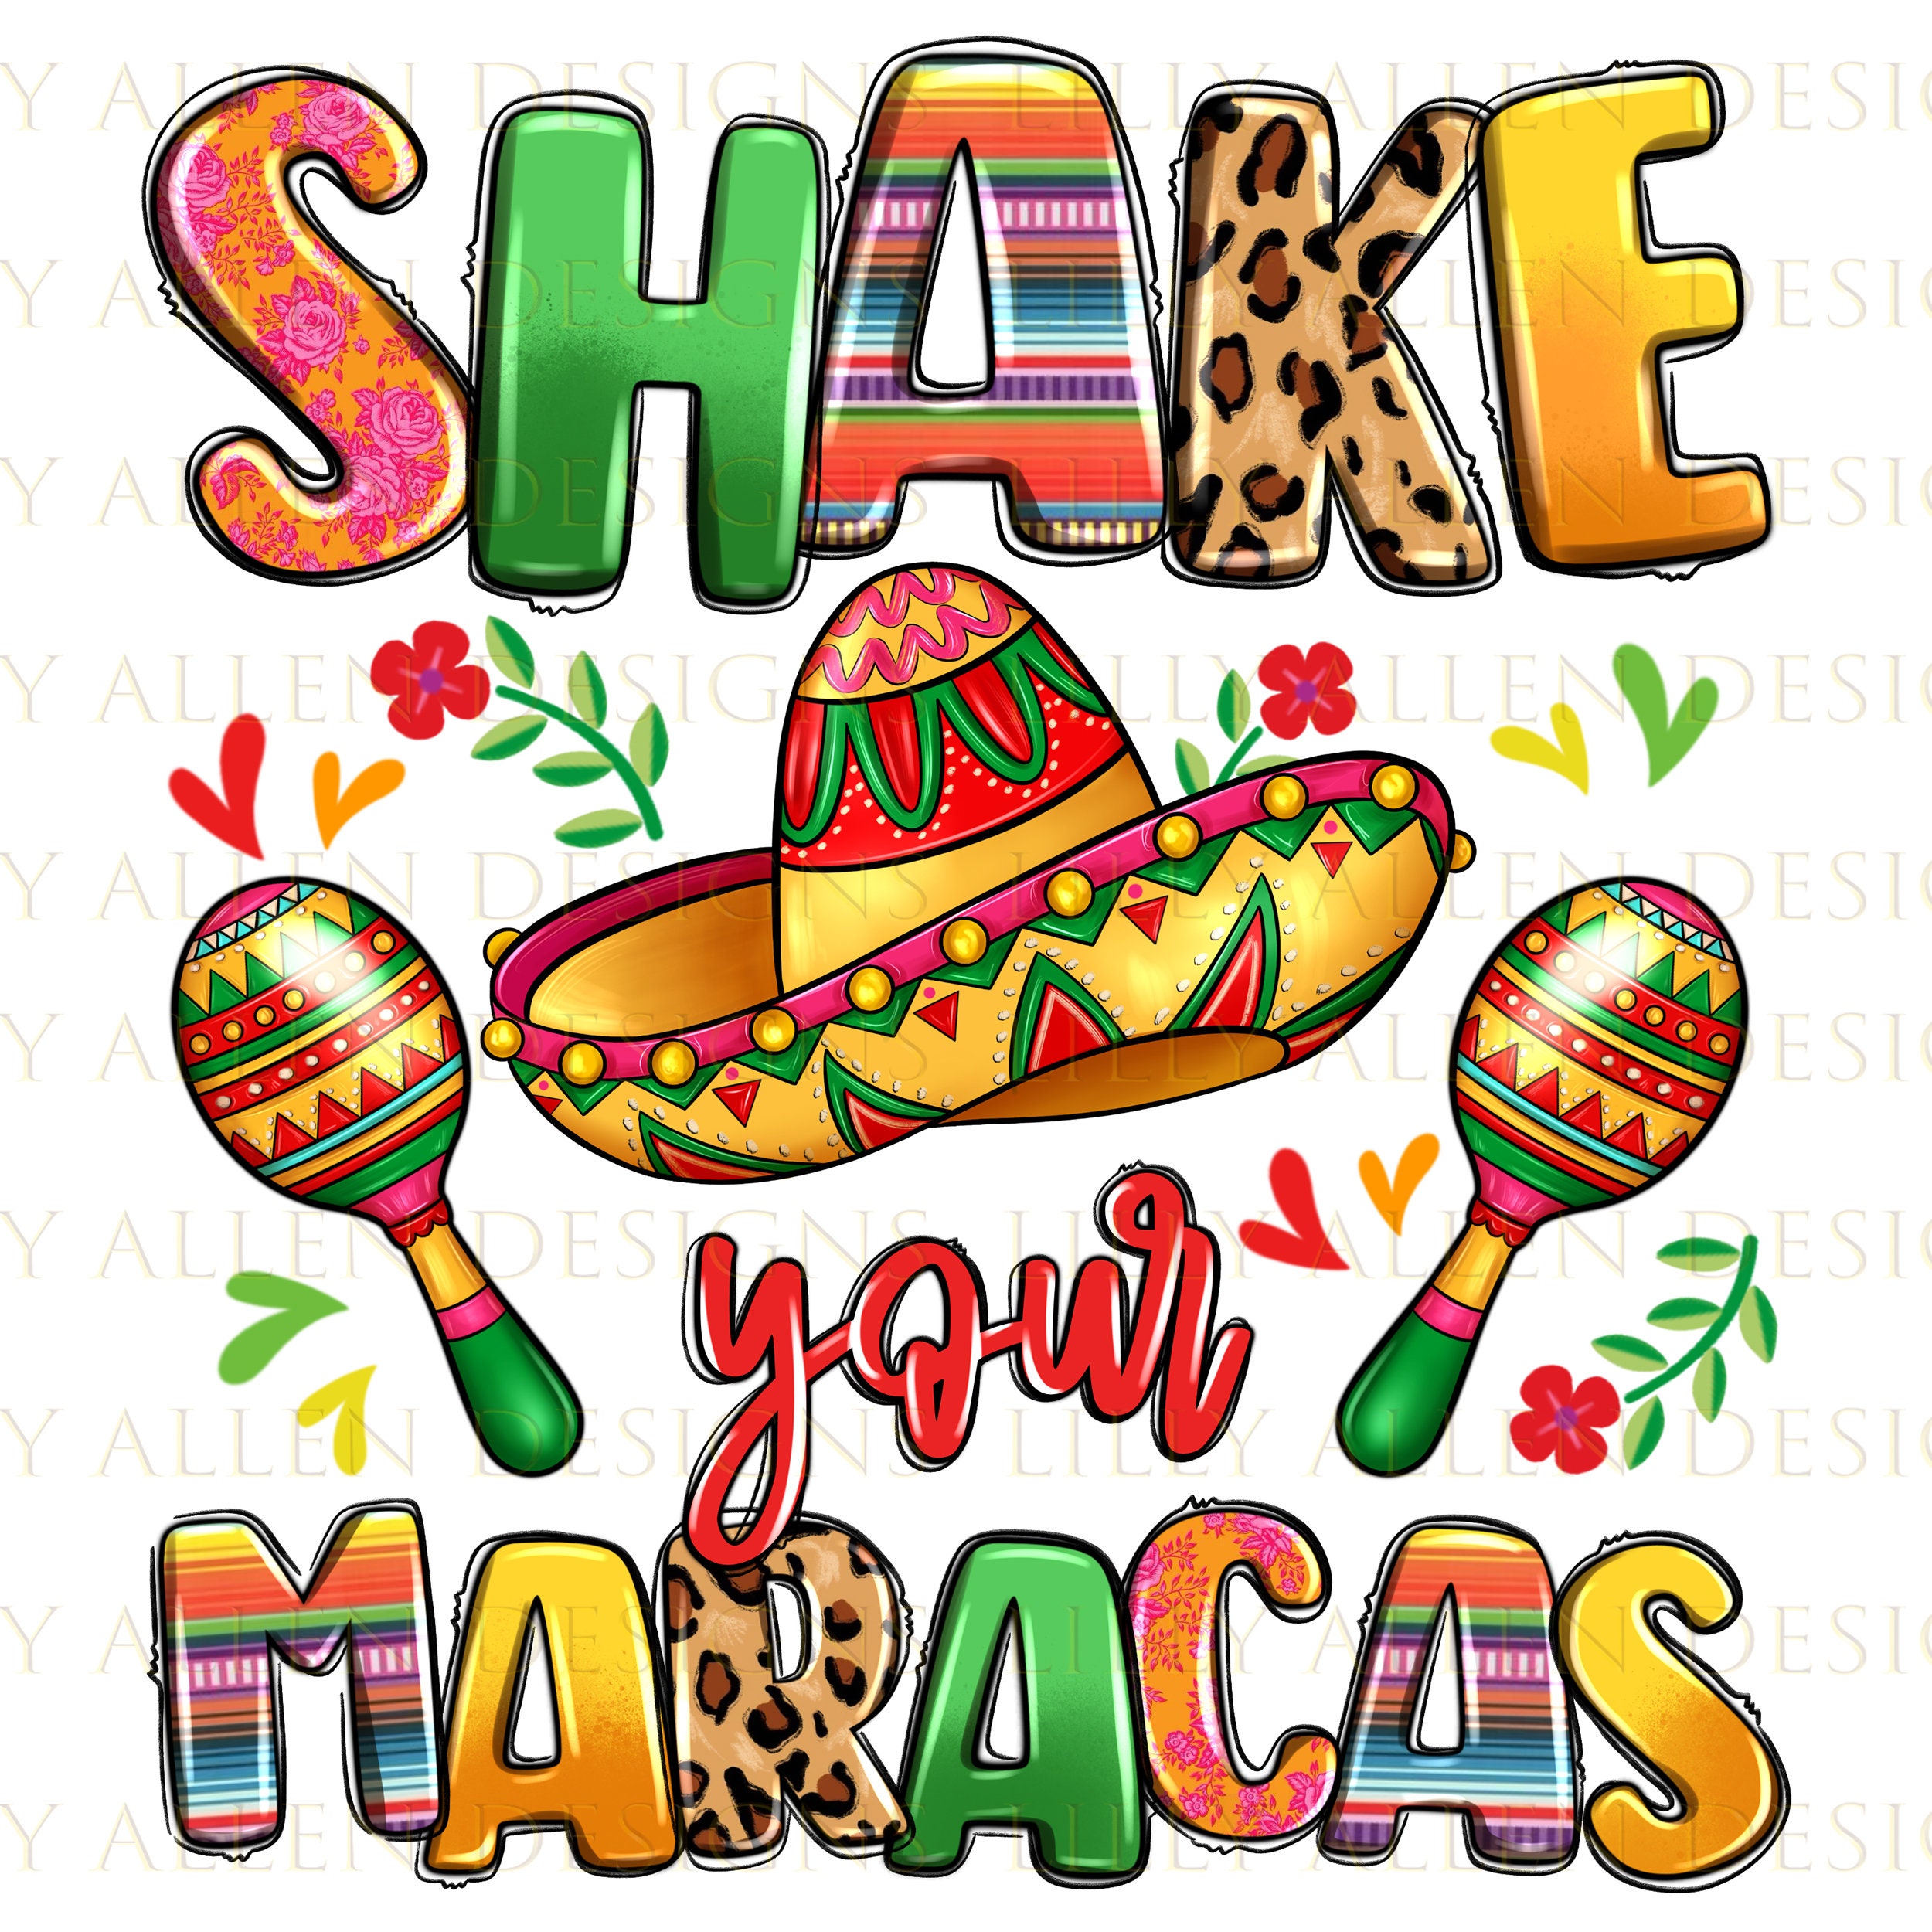  Shake Your Boobies Maracas Funny Cinco De Mayo Men Women Tank  Top : Clothing, Shoes & Jewelry